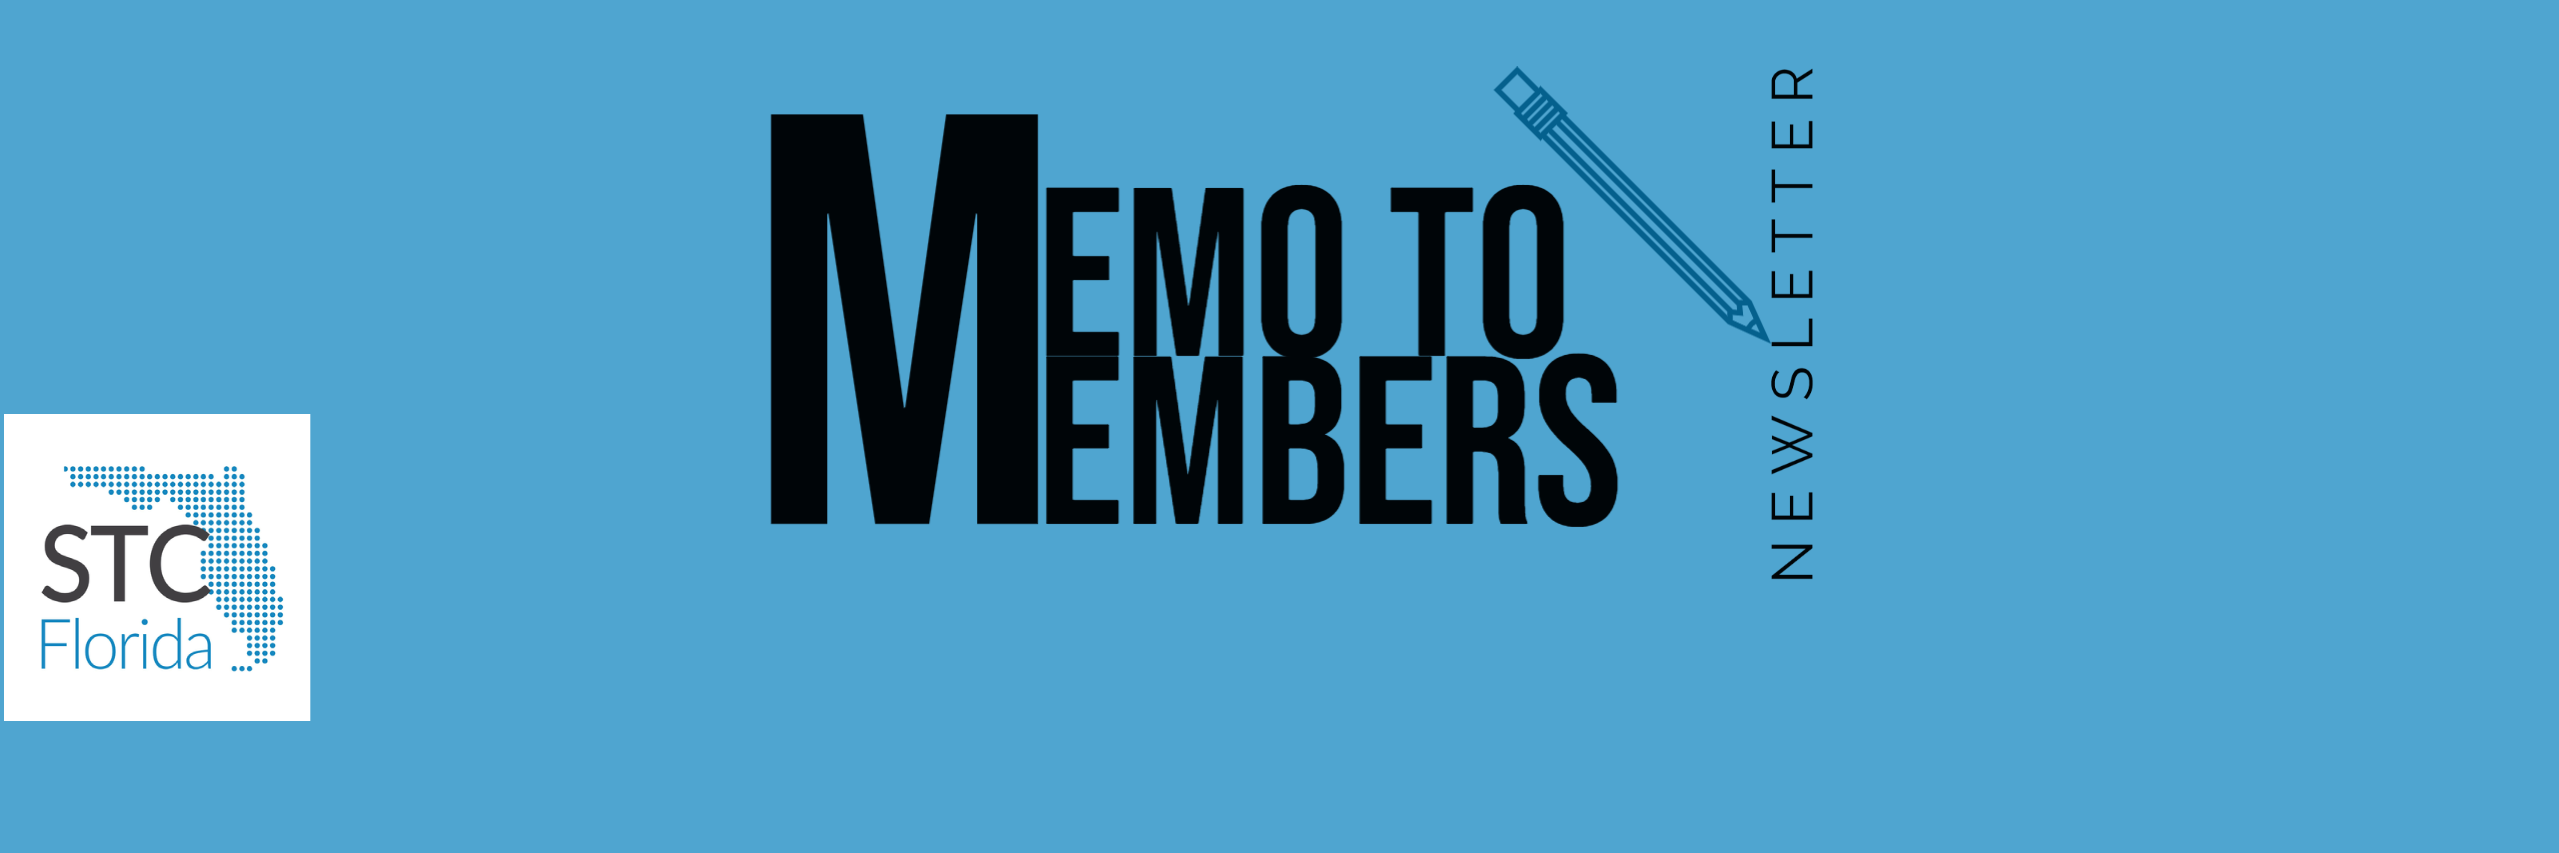 Memo to Members